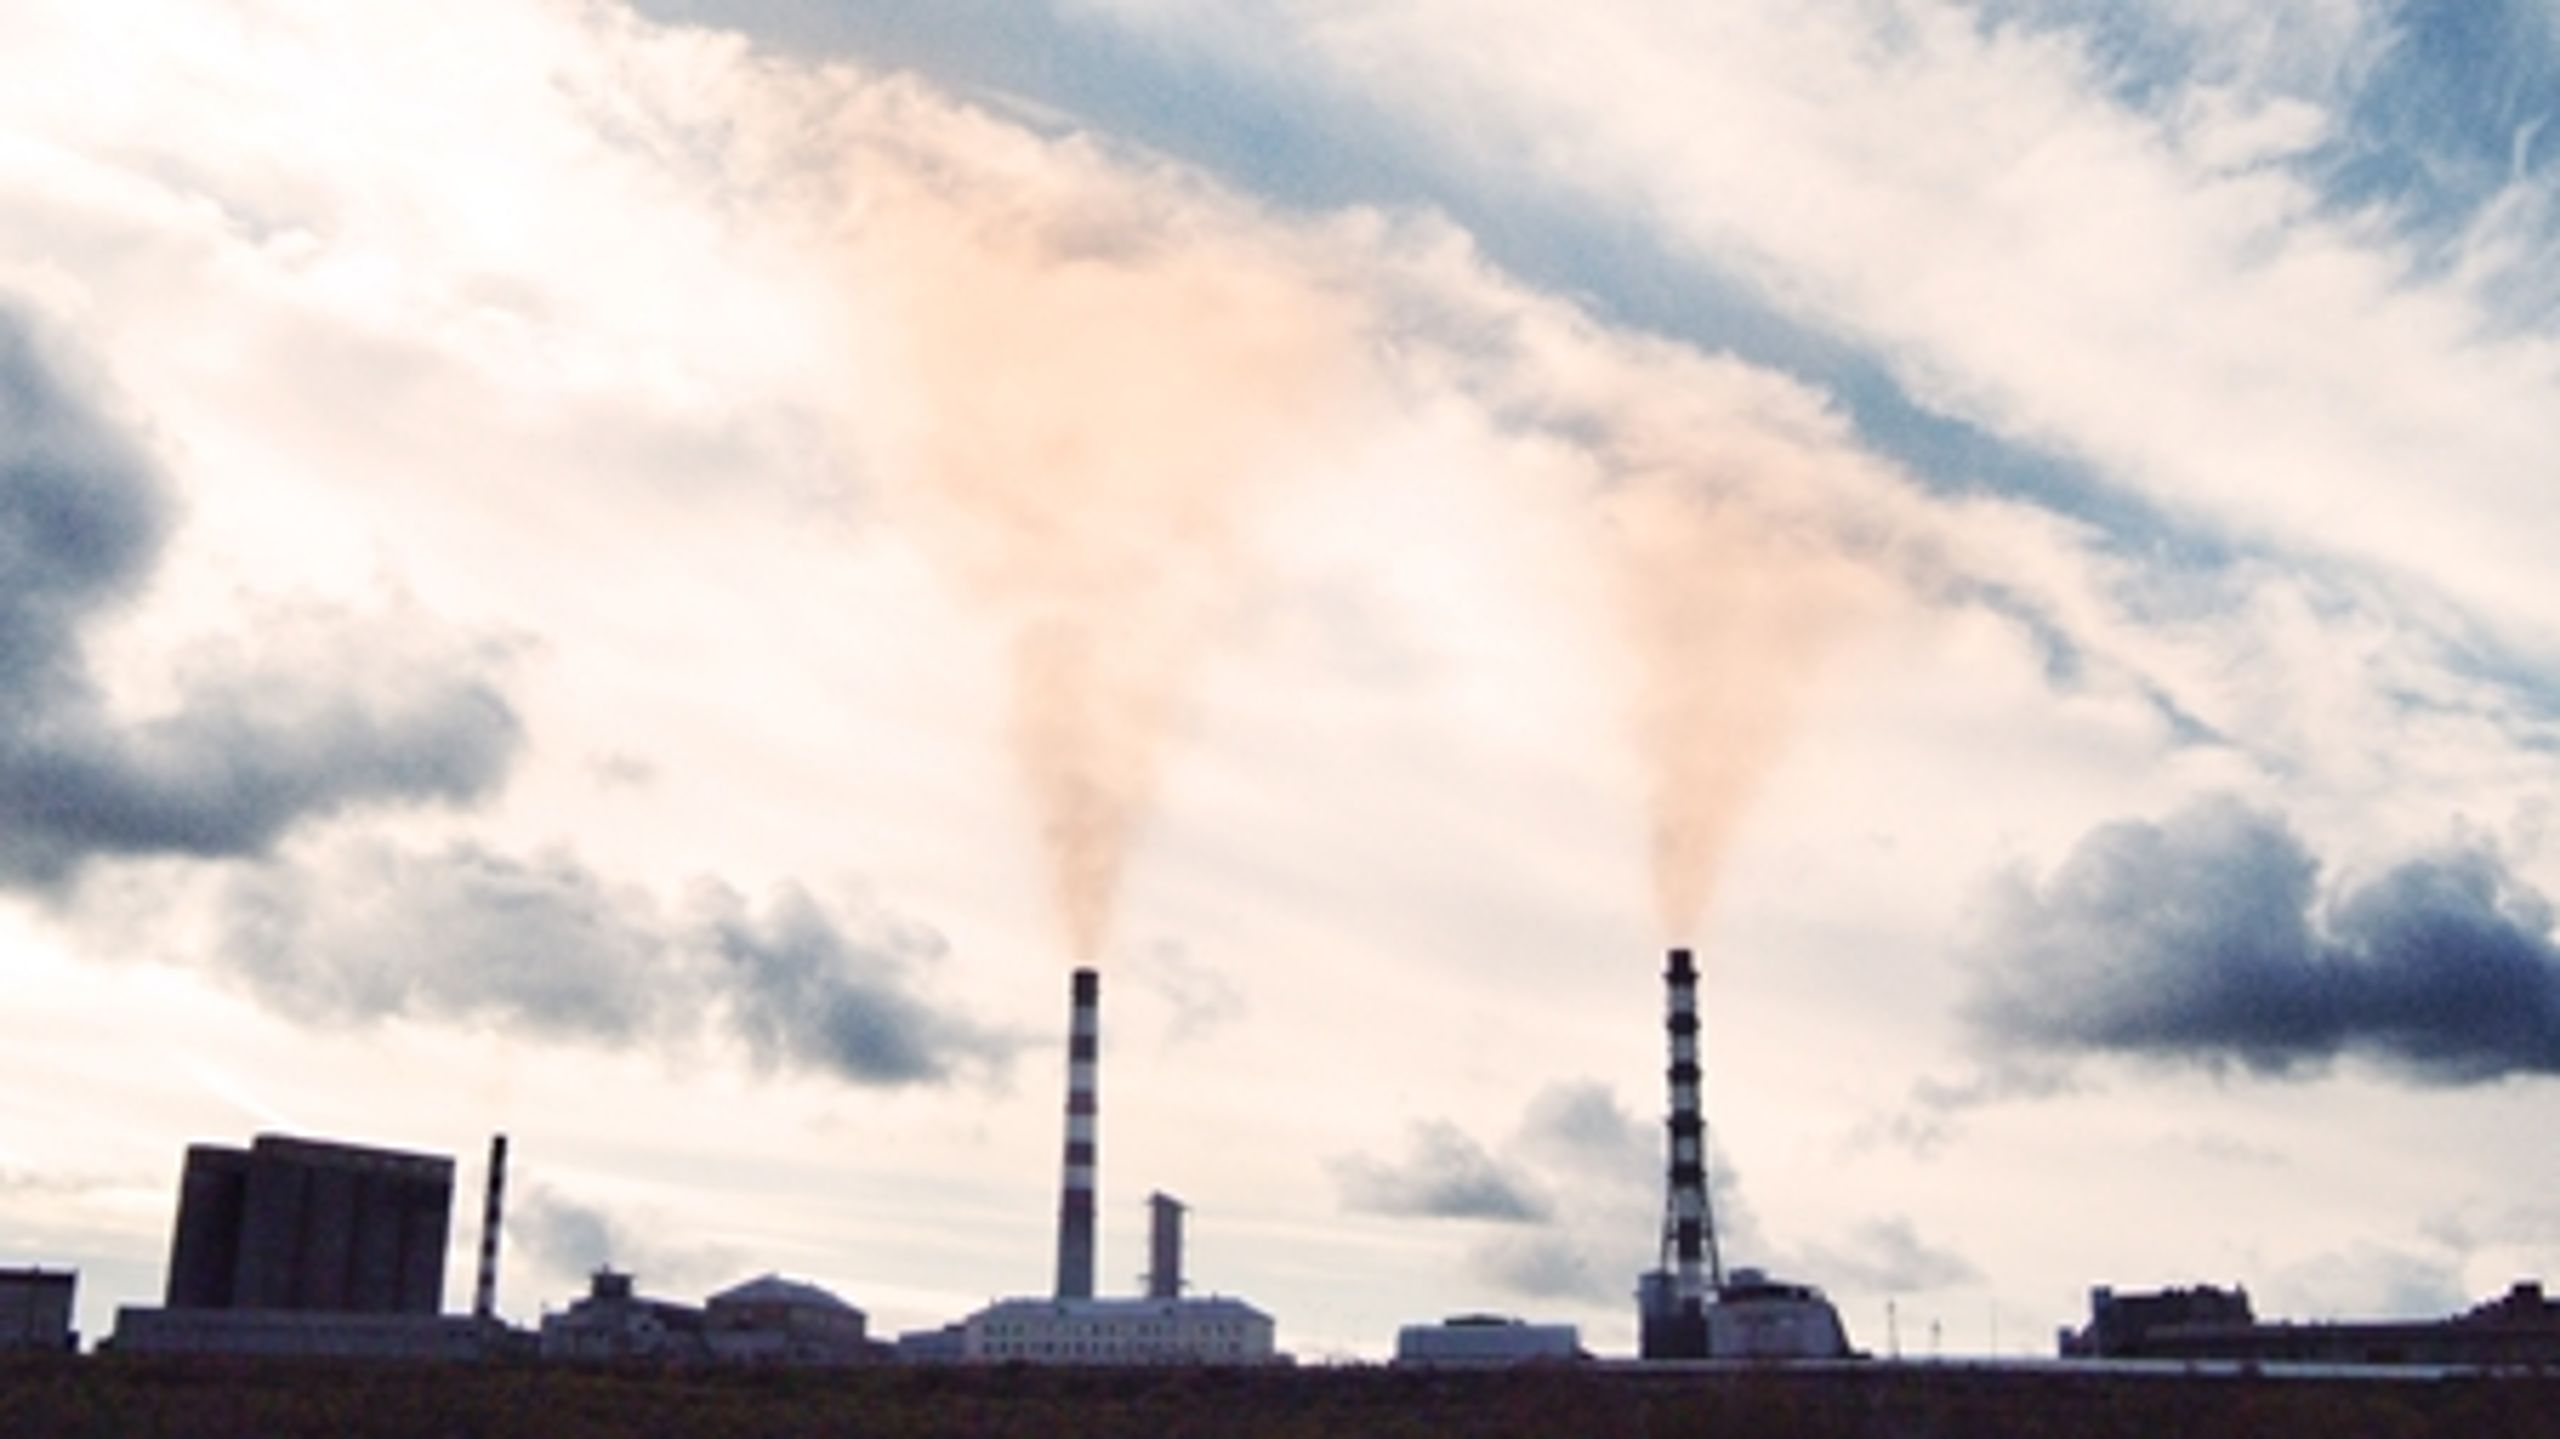 Forslag om at købe sig til CO2-udledning i udlandet møder bred politisk modstand på Christiansborg.